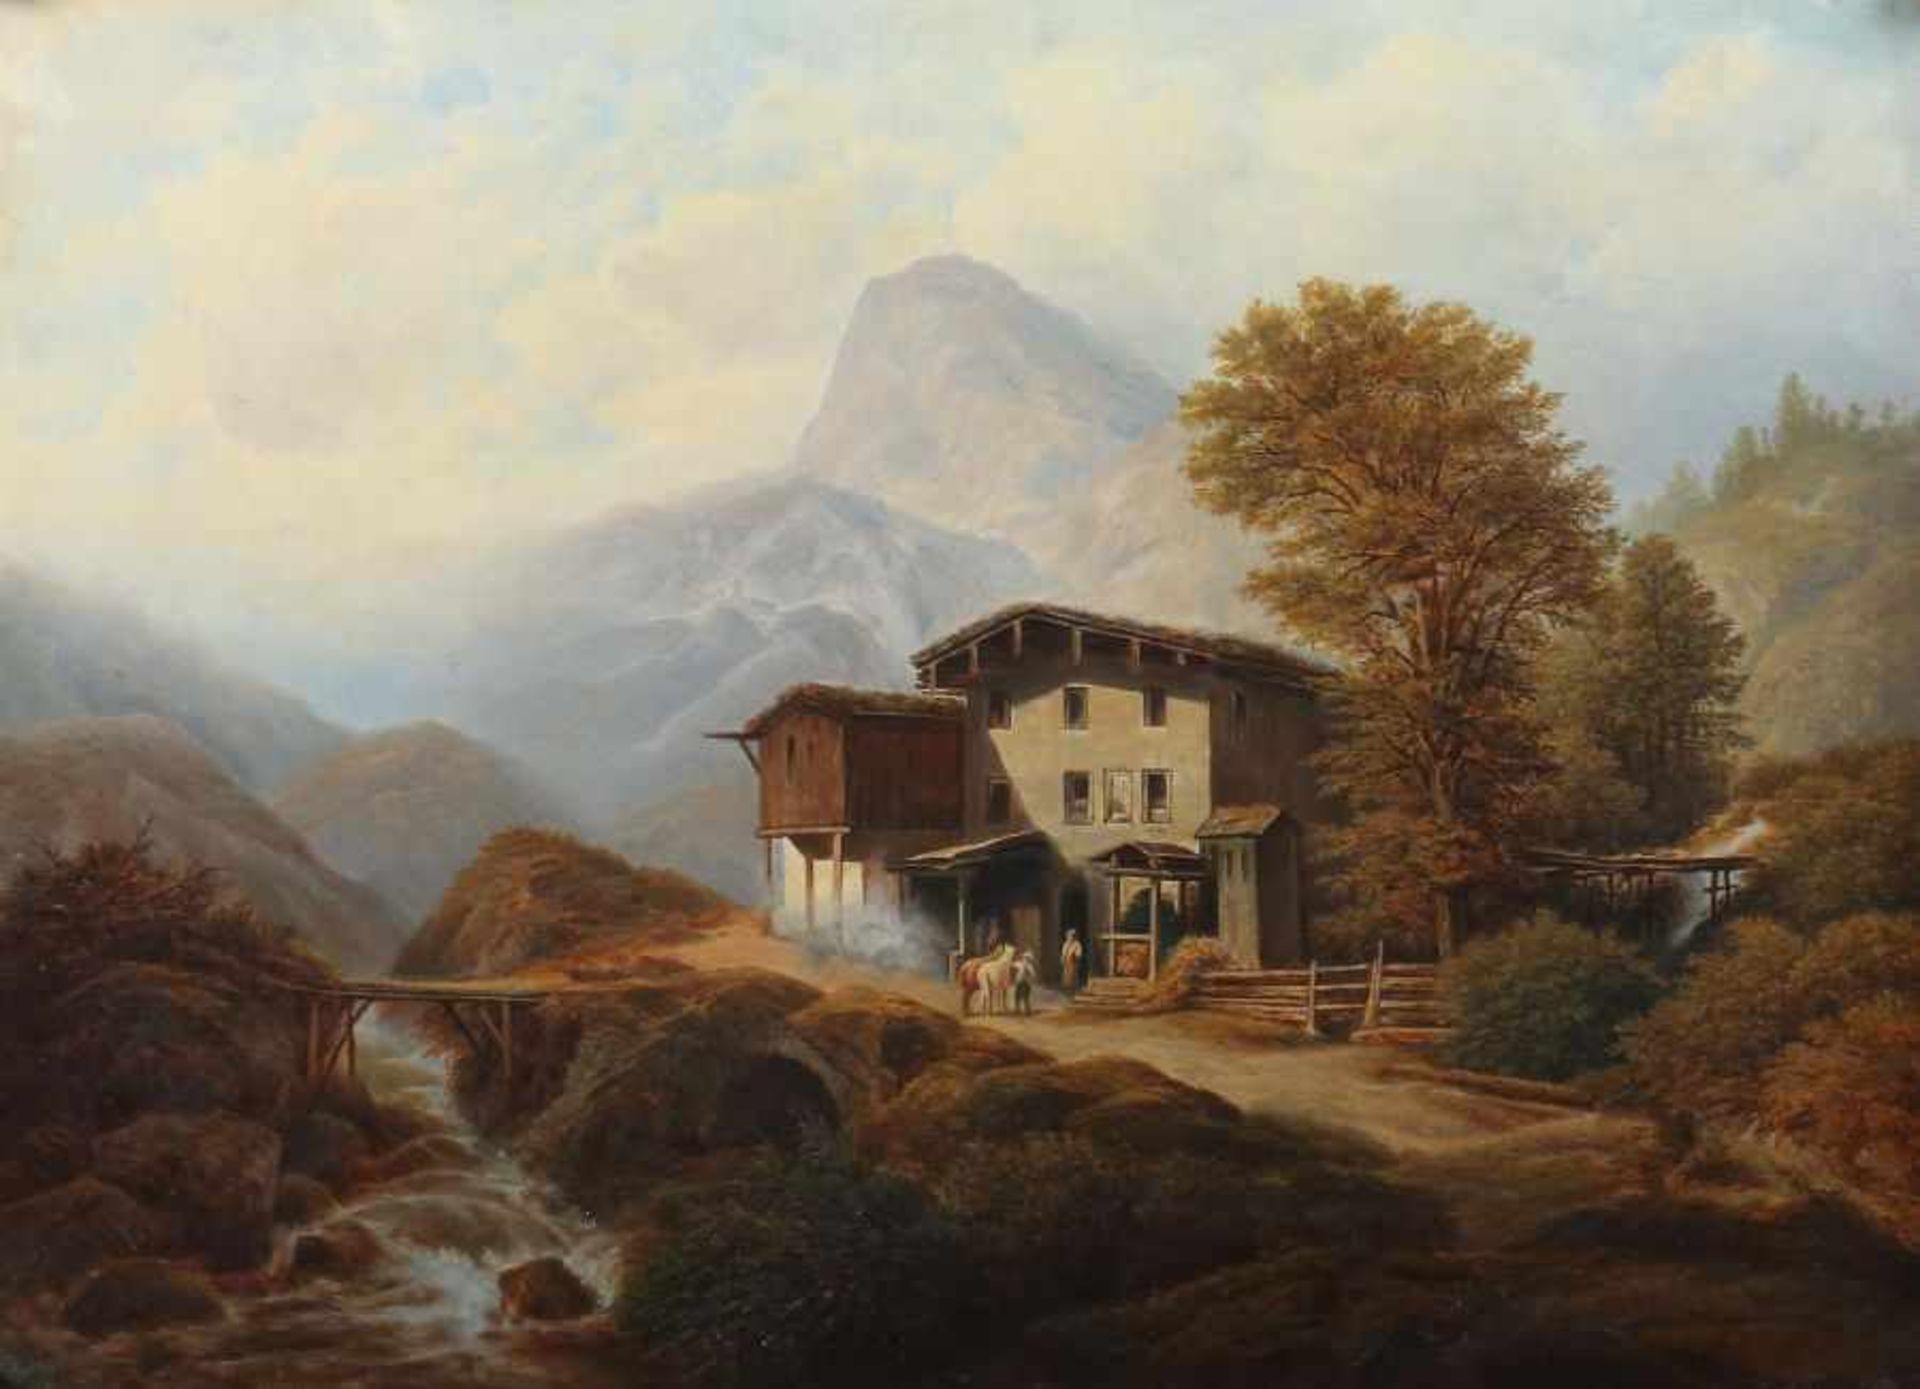 Österreichischer Maler des 19. Jh. "Rast am Berghof", spätsommerliche Landschaftsdarstellung mit